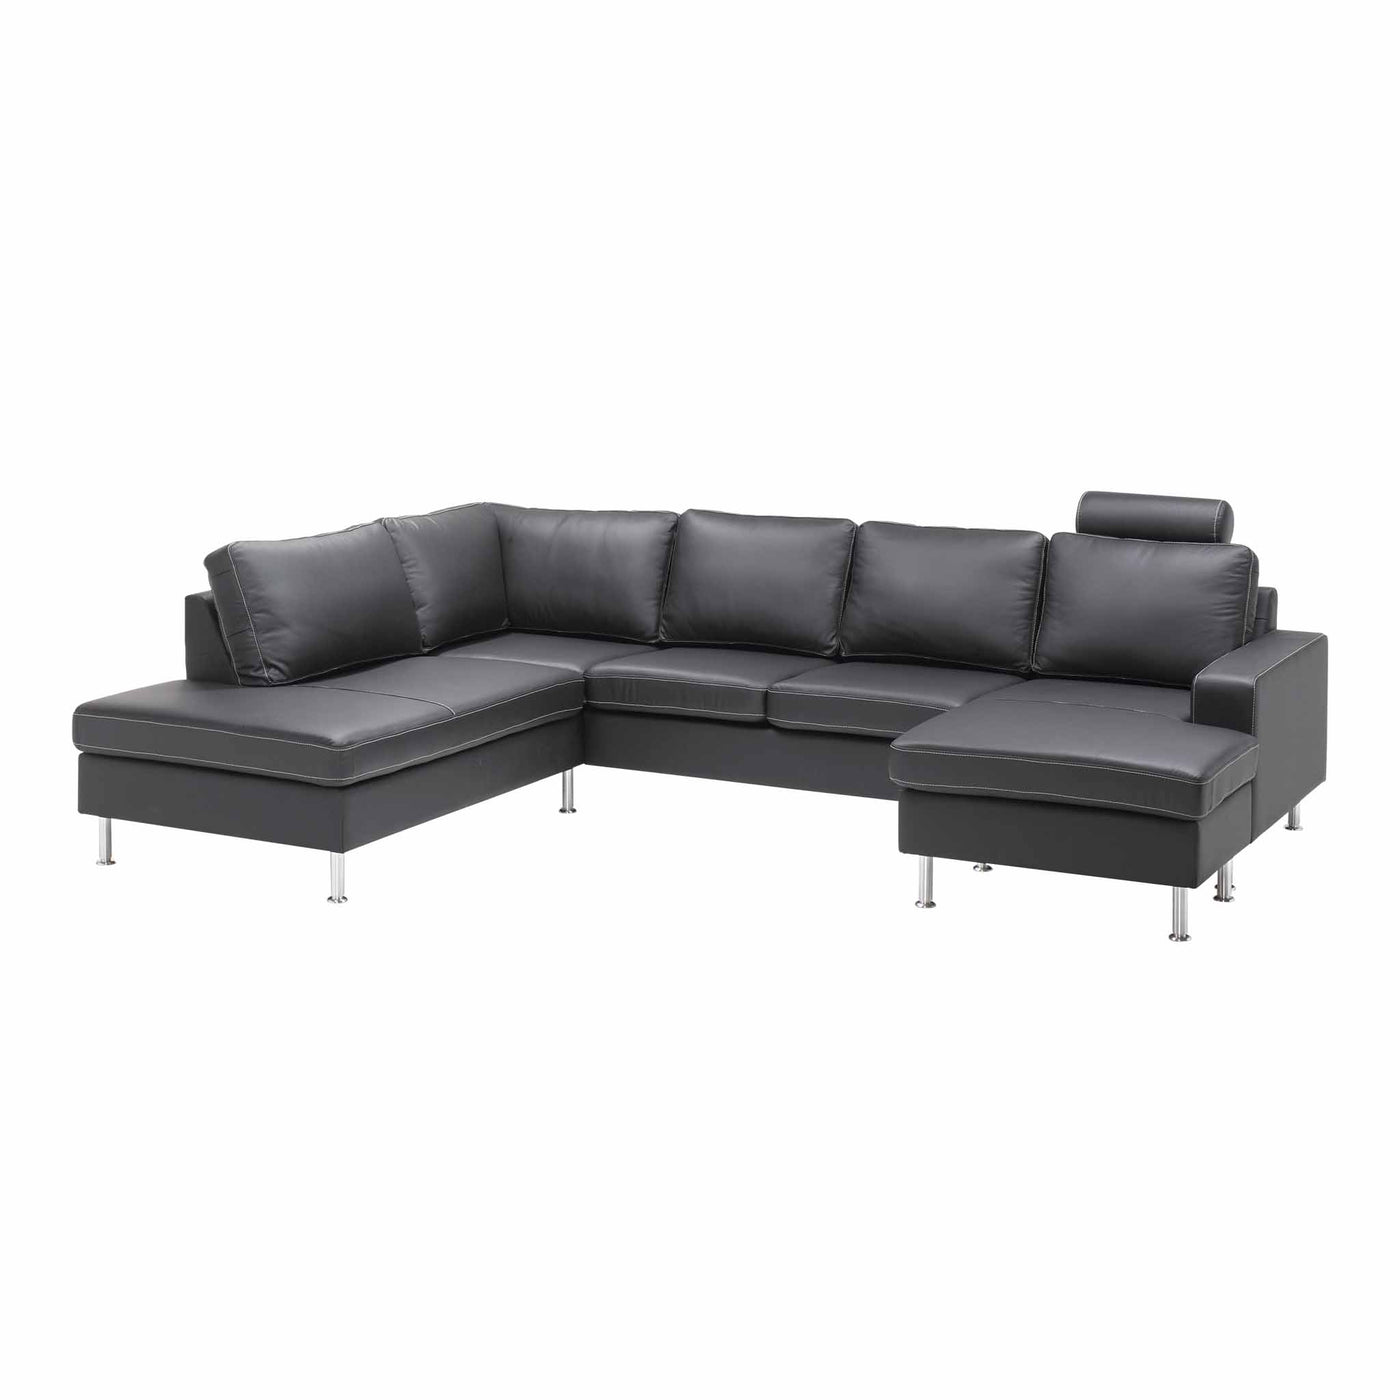 Optimal u-sofa fra Topline i sort læder med ben i børstet krom